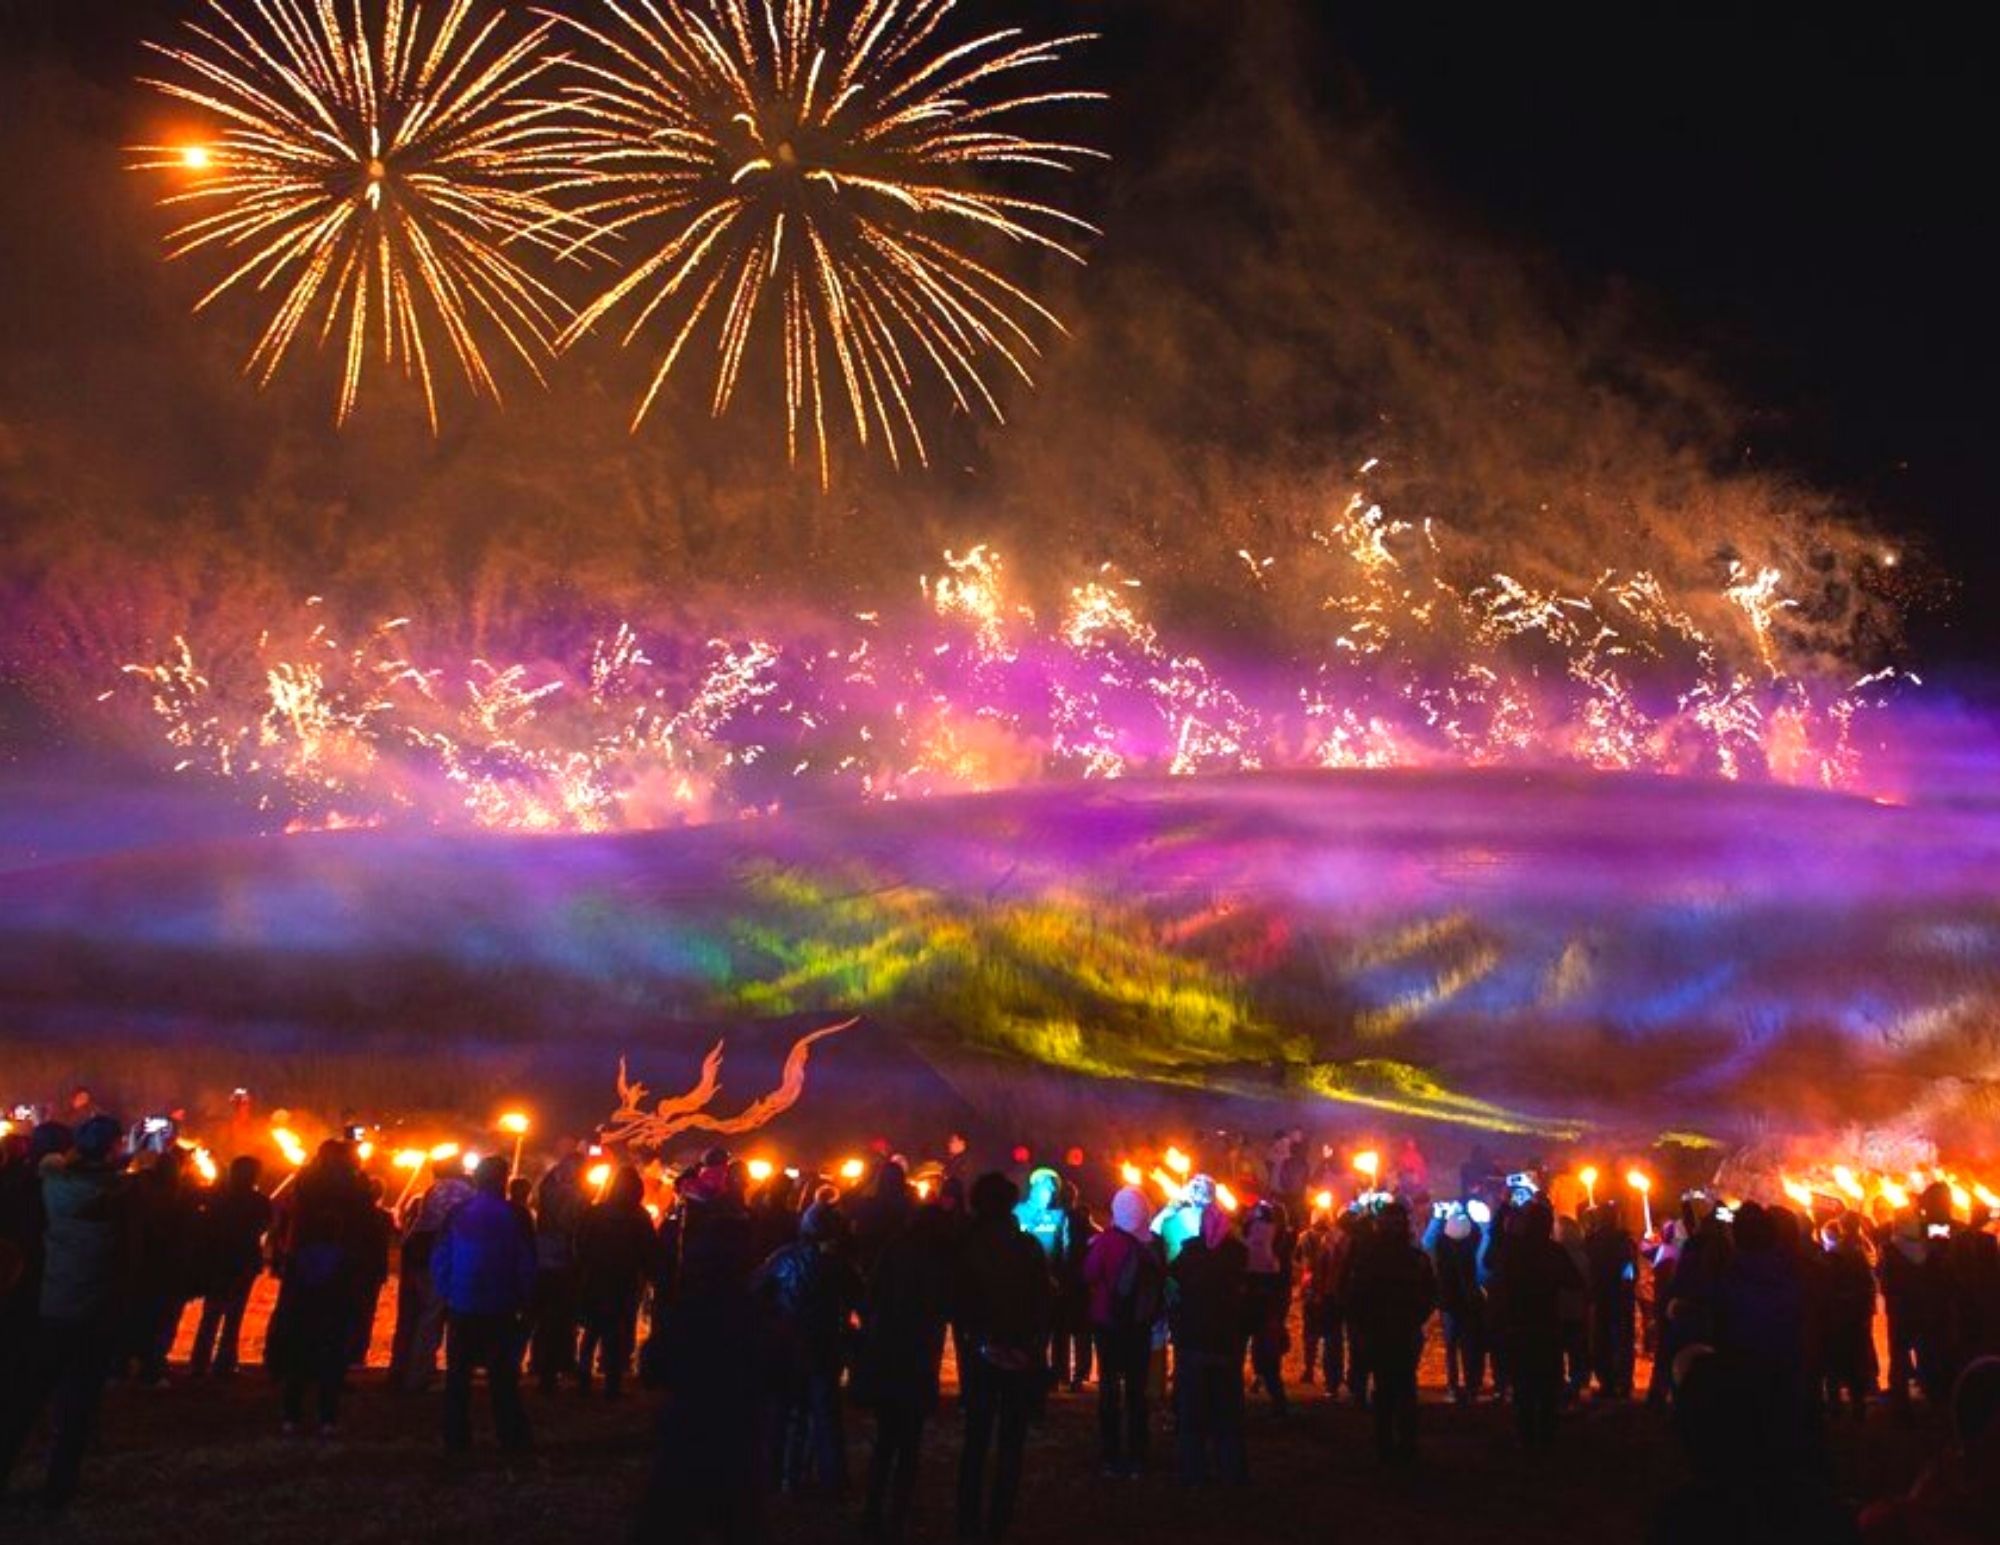 korea travel festival in bangkok 2023